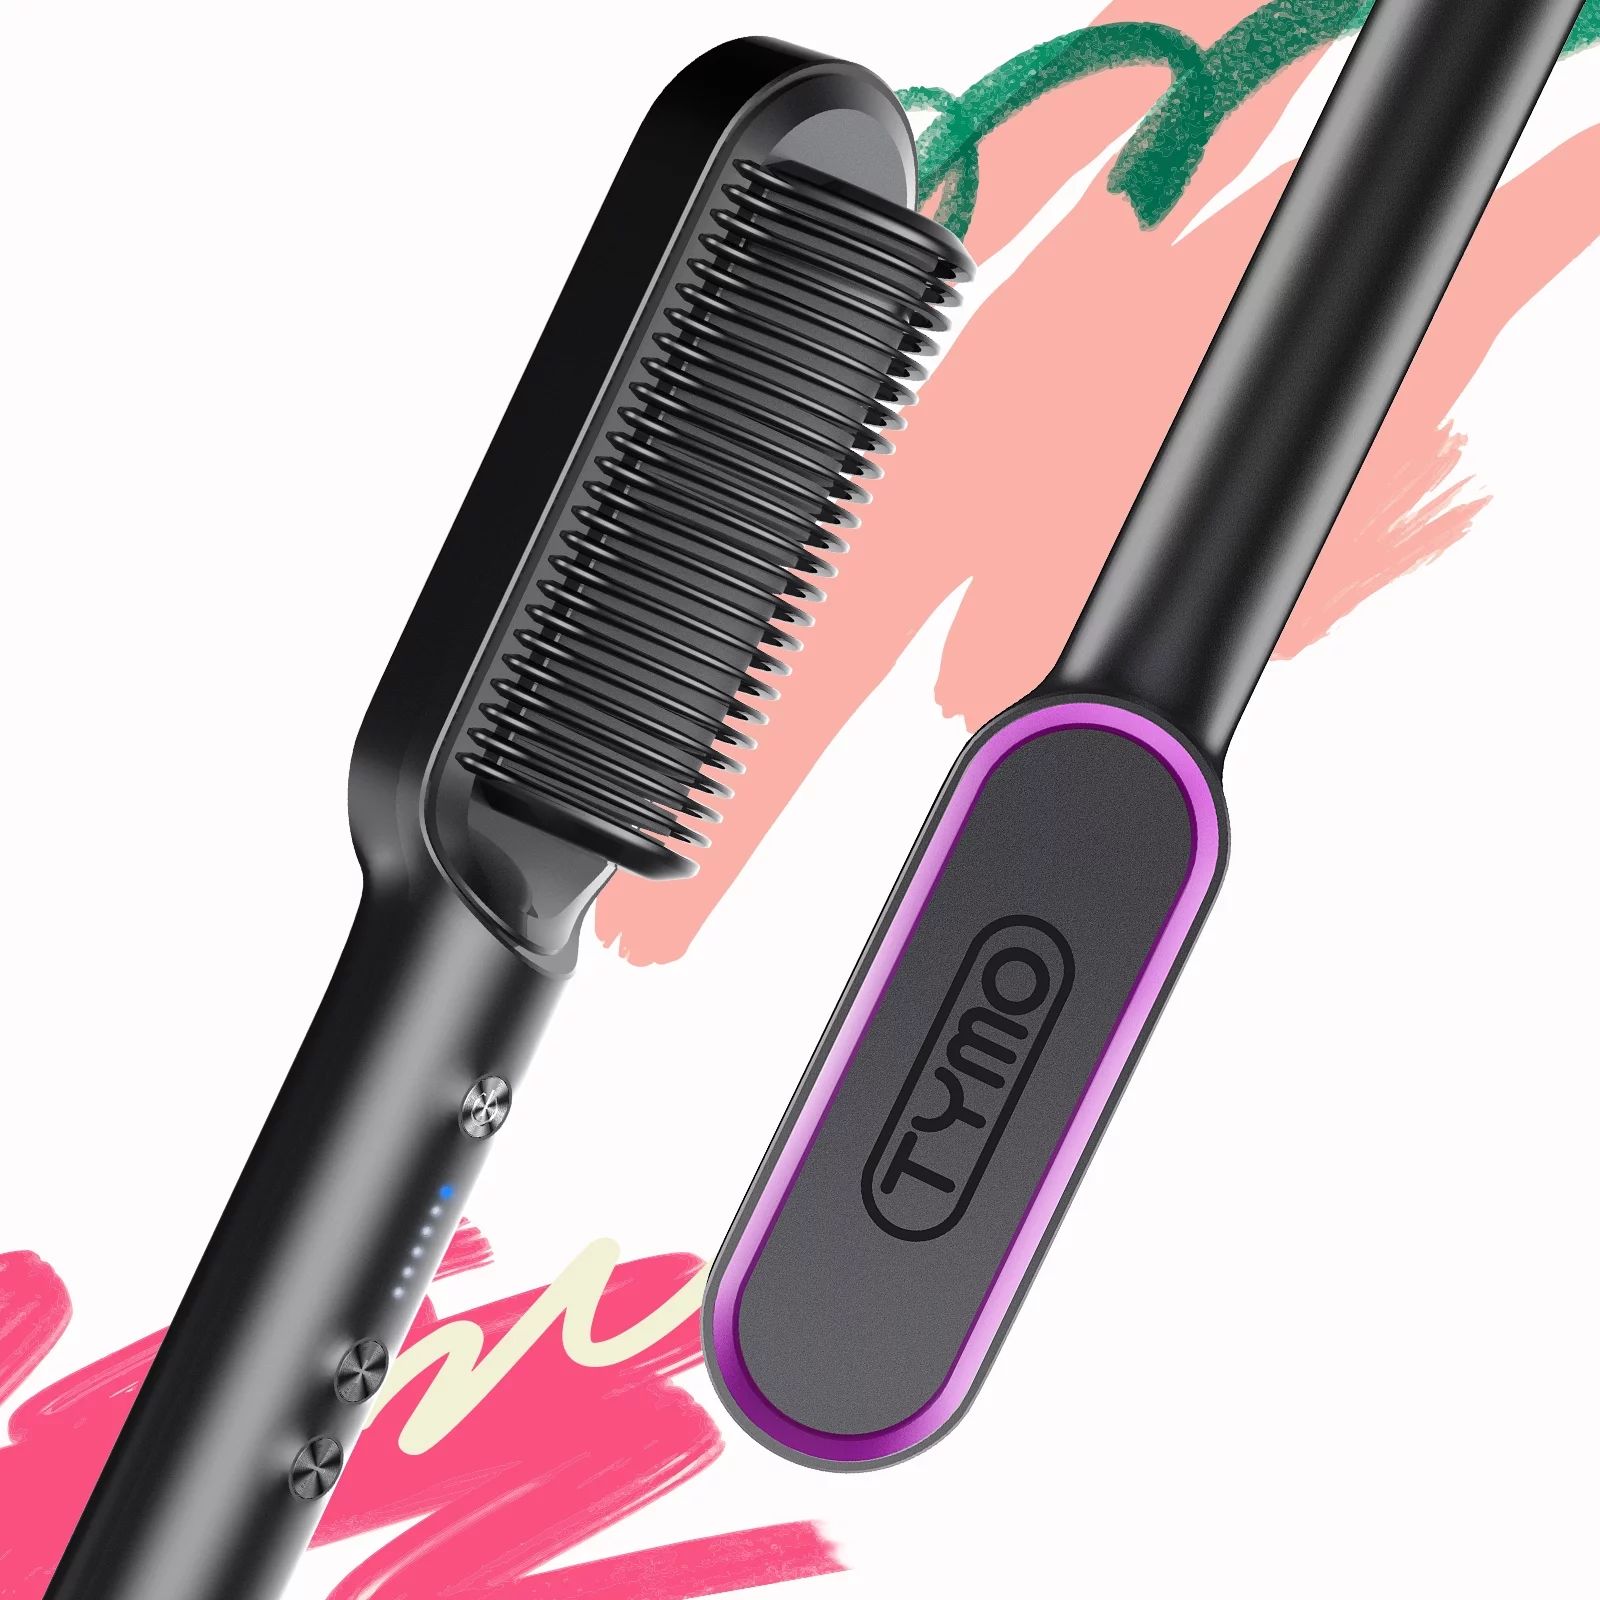 TYMO RING Hair Straightener Brush Black – Hair Straightening Iron with Built-in Comb, 20s Fast ... | Walmart (US)